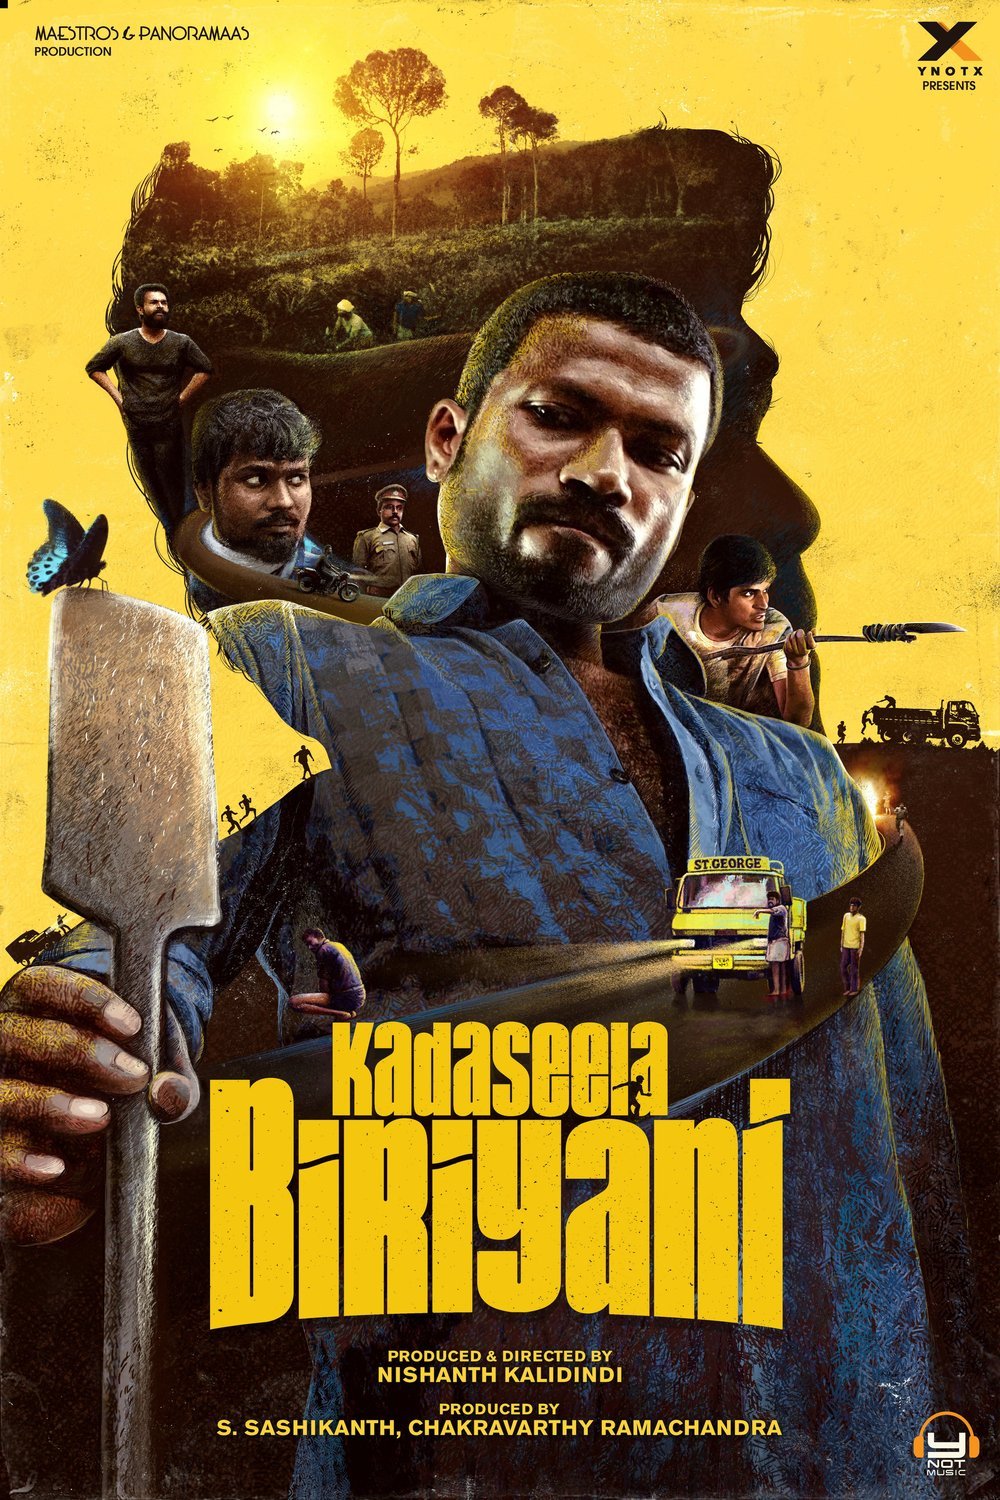 Tamil poster of the movie Kadaseela Biriyani